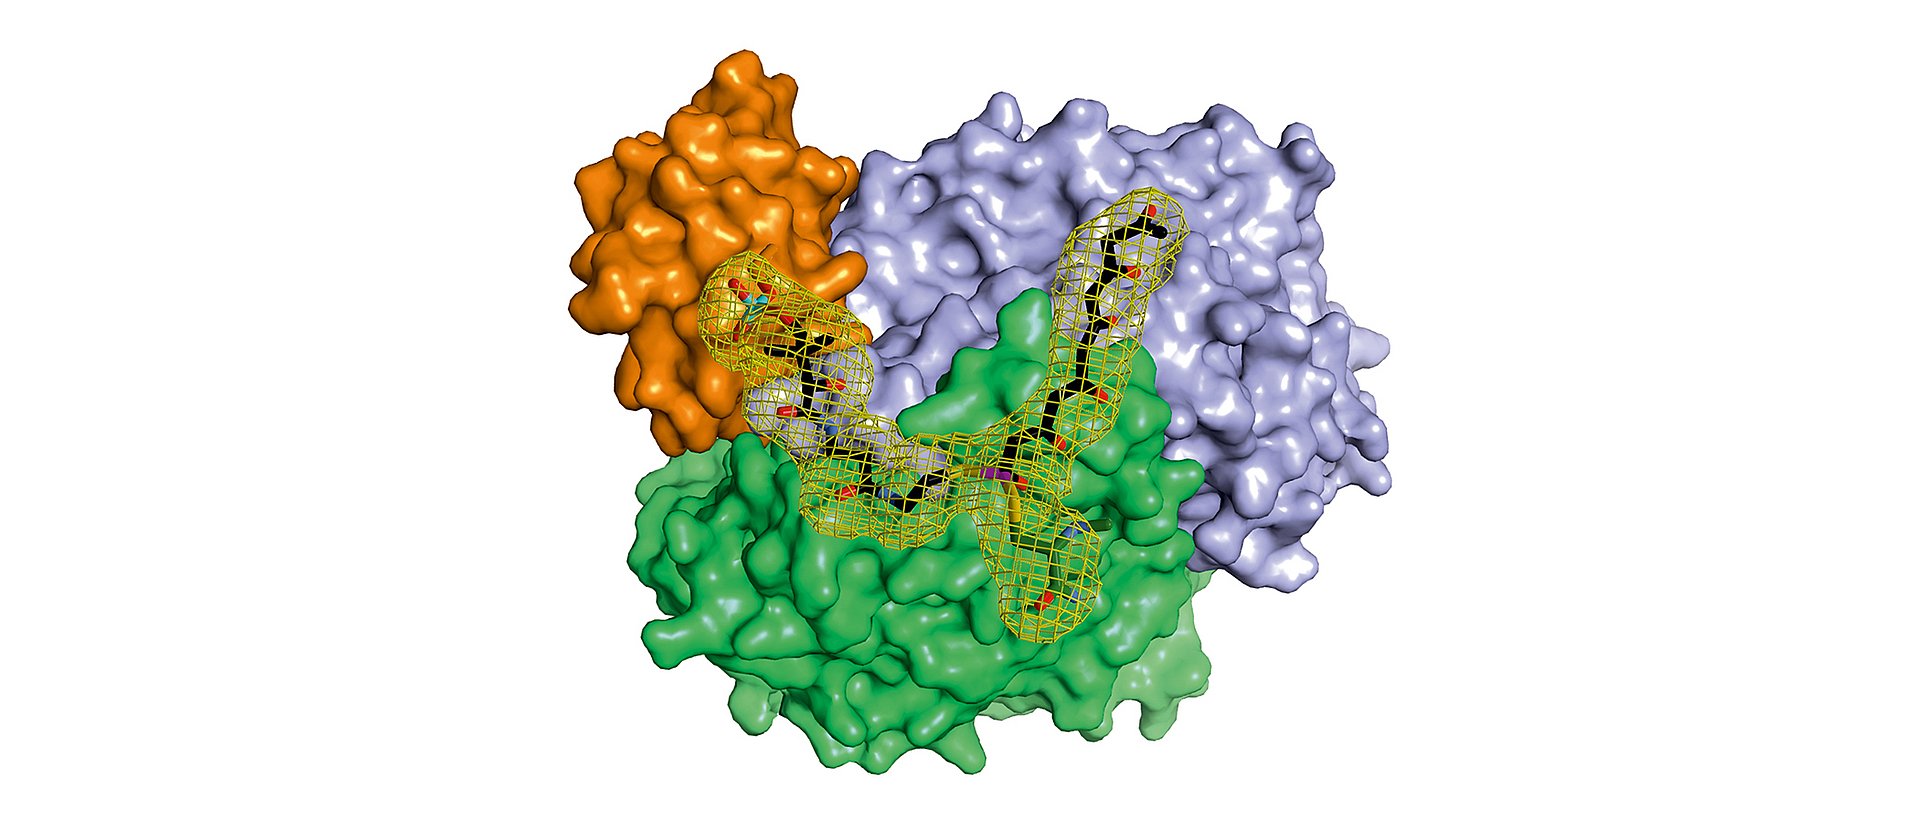 Ein Komplex aus drei Proteinen schützt das hochreaktive Hexaketid bei der Verlängerung zum Oktaketid. Aus diesem werden im Zusammenspiel mit weiteren Proteinen wichtige Naturstoffe hergestellt.